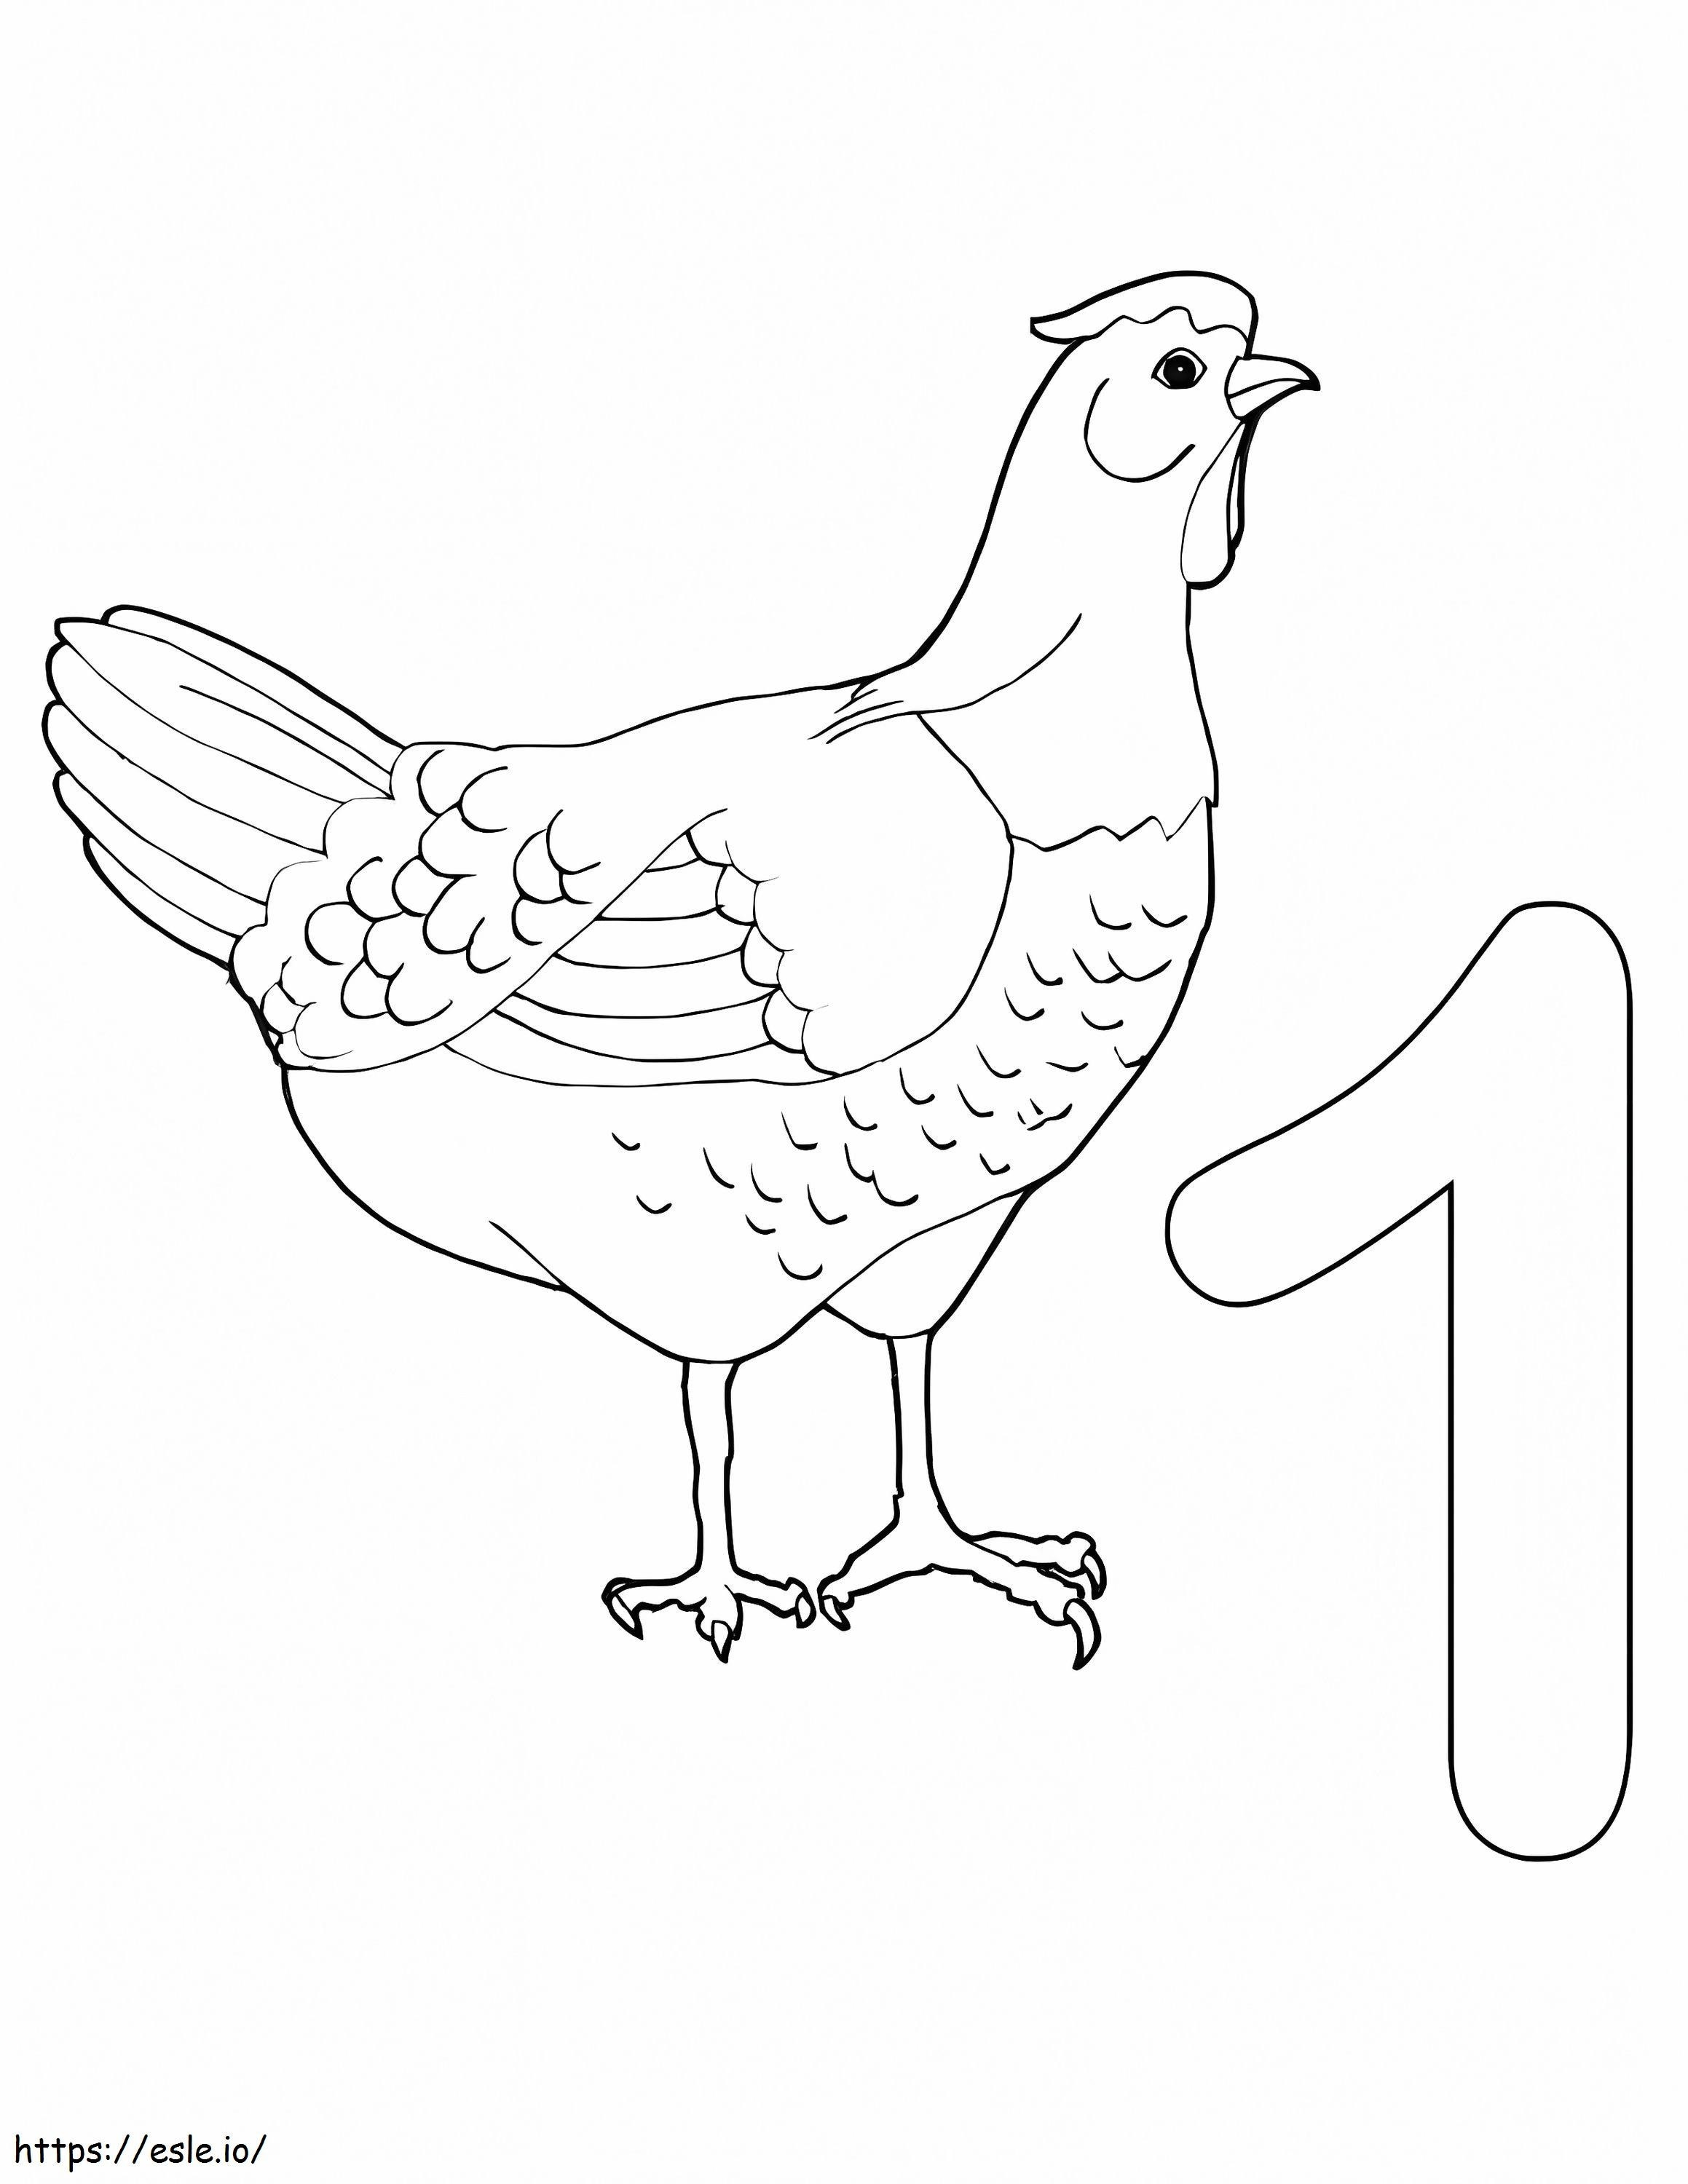 Numero 1 E Pollo da colorare